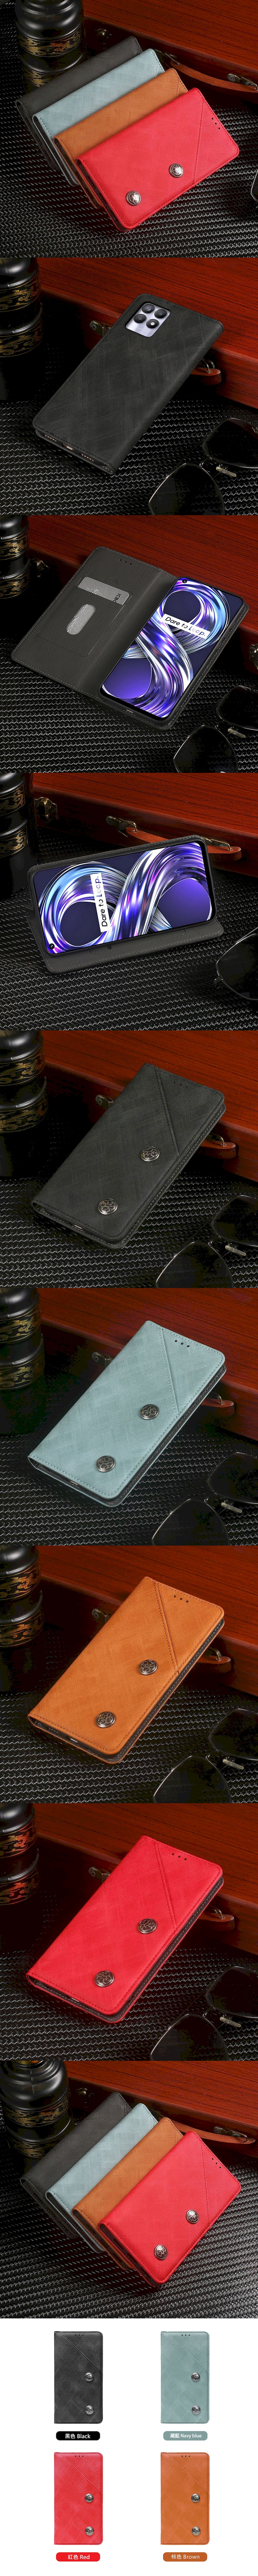 皮革保護套(MASK) - 復古隱藏微磁扣設計翻蓋式皮套手機套